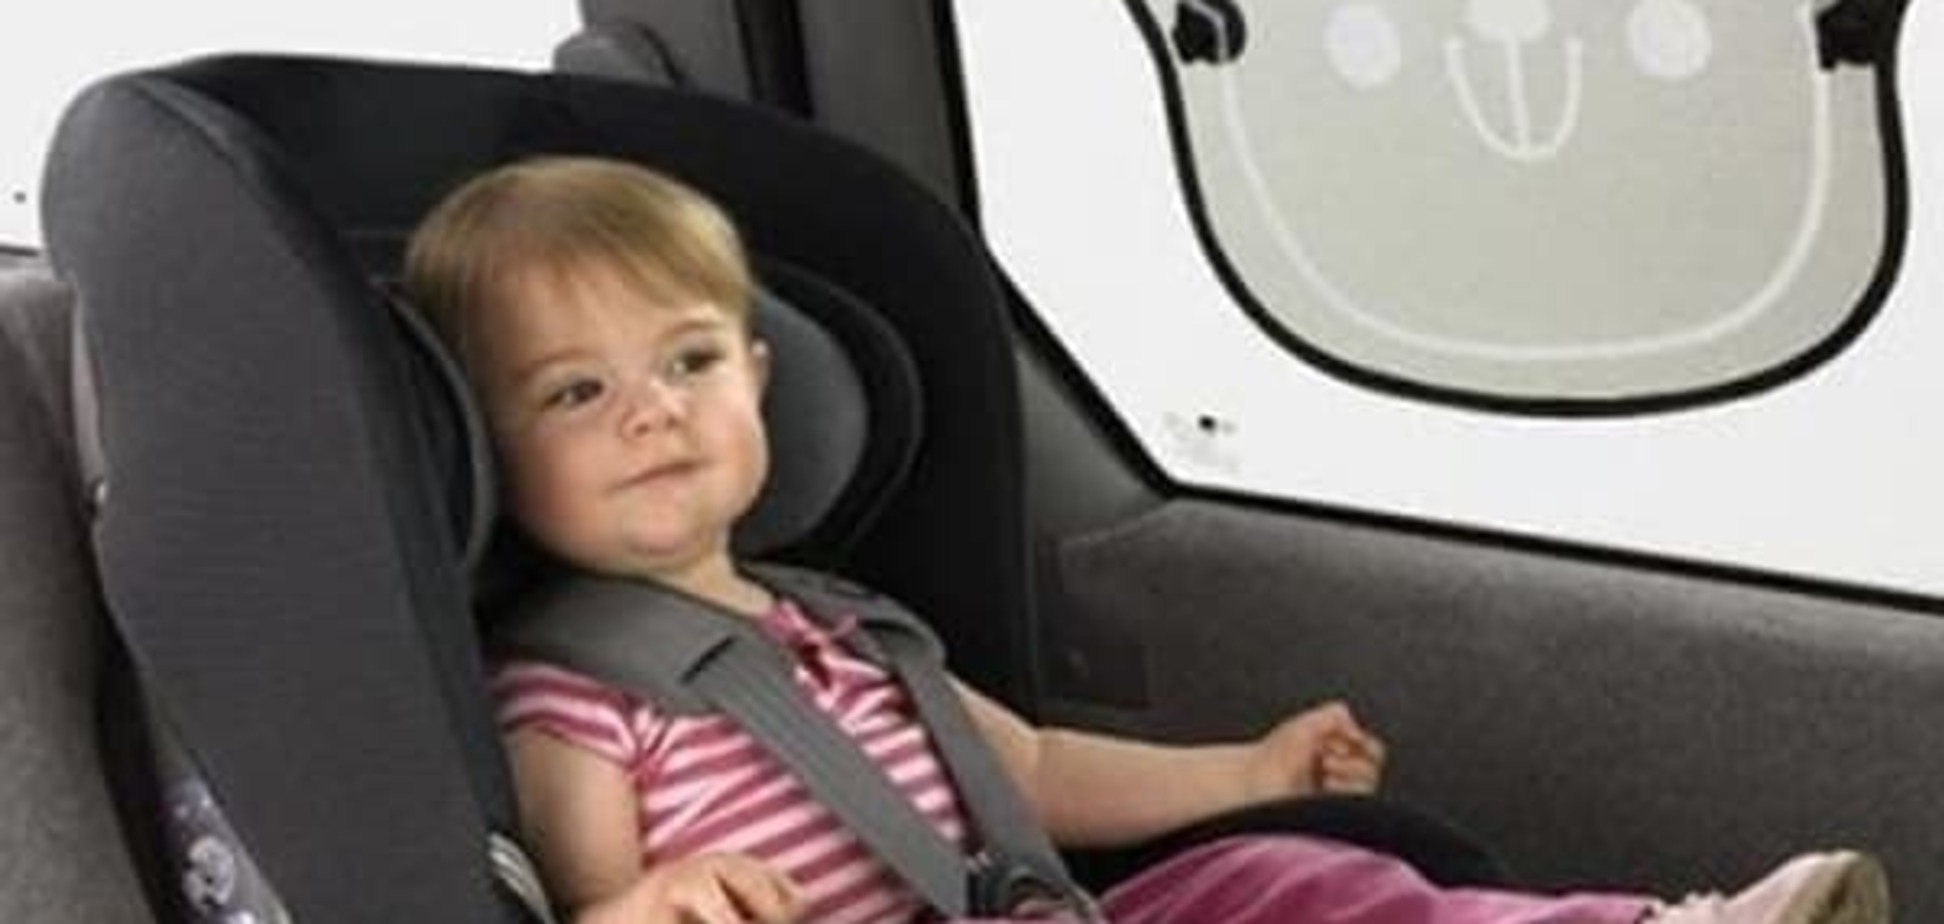 Автокресло - обязательный атрибут детской безопасности в машине